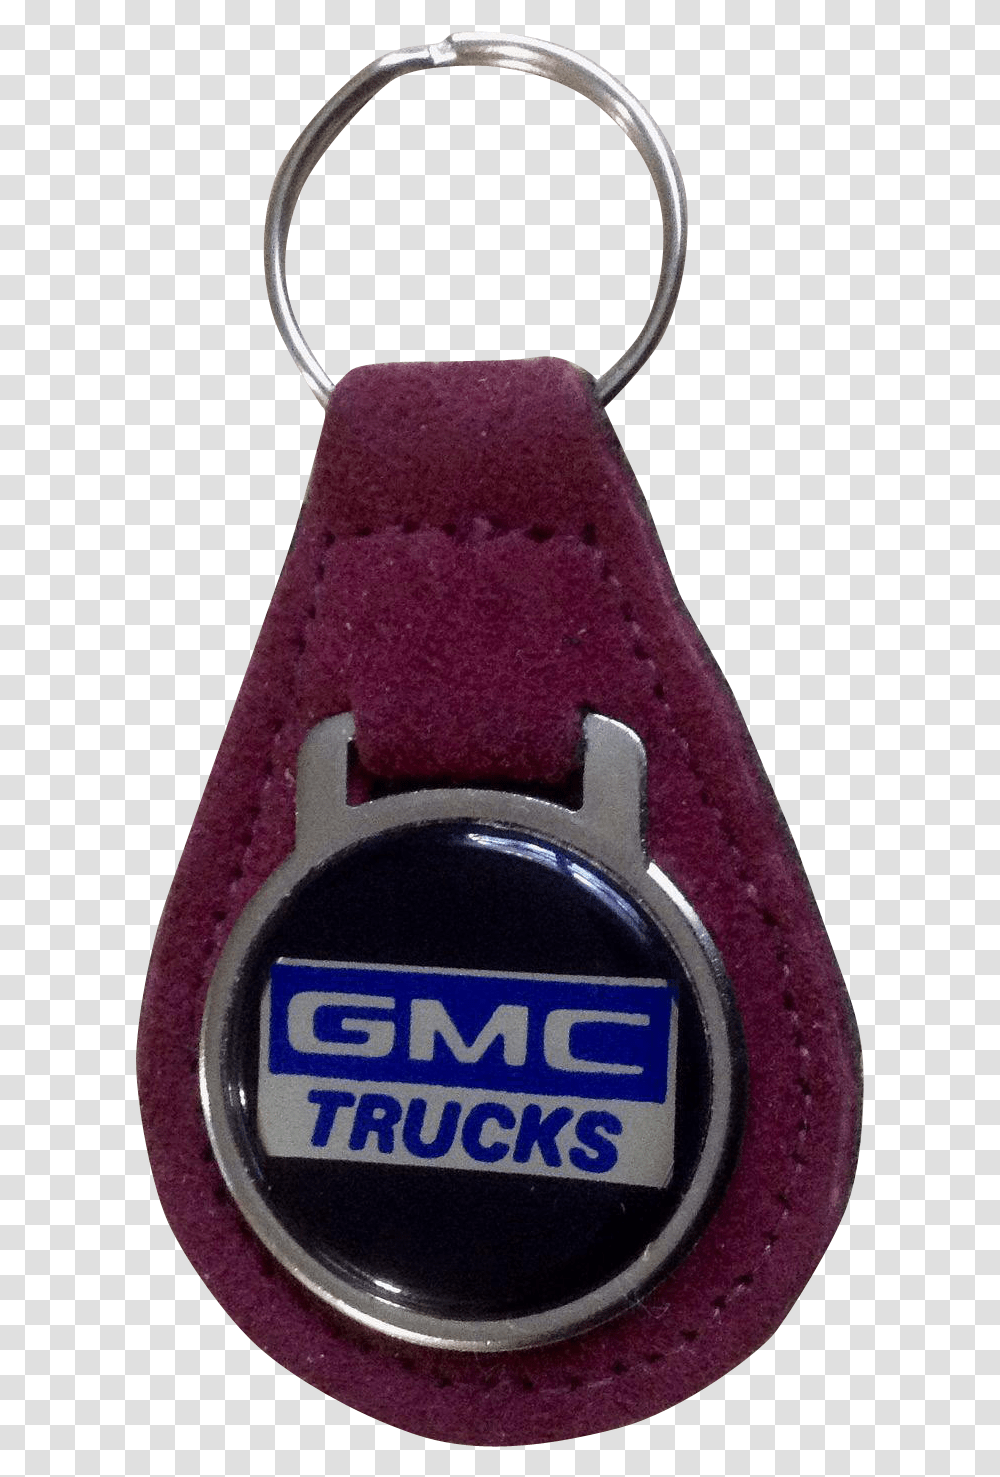 Gmc Truck, Wristwatch, Digital Watch Transparent Png